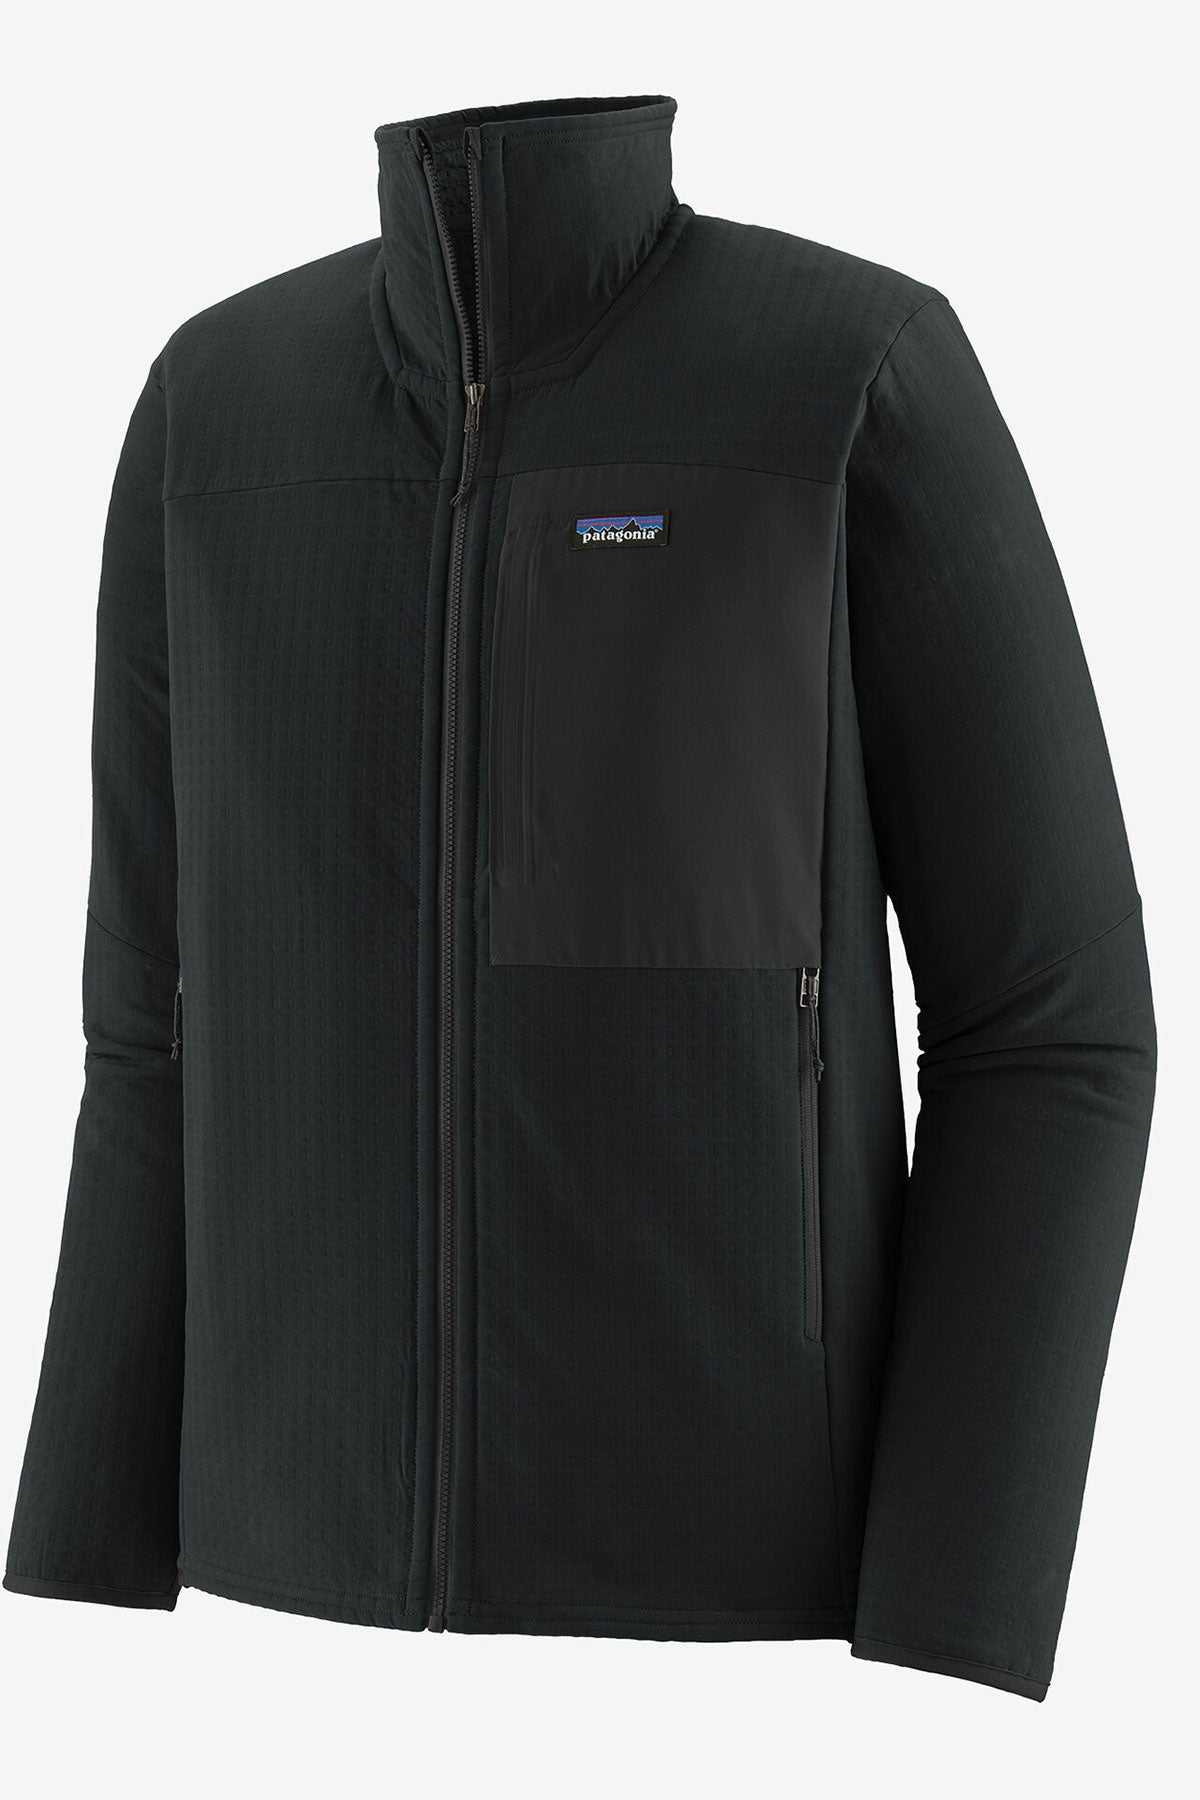 Patagonia Mens R2 TechFace Custom Jackets, Black